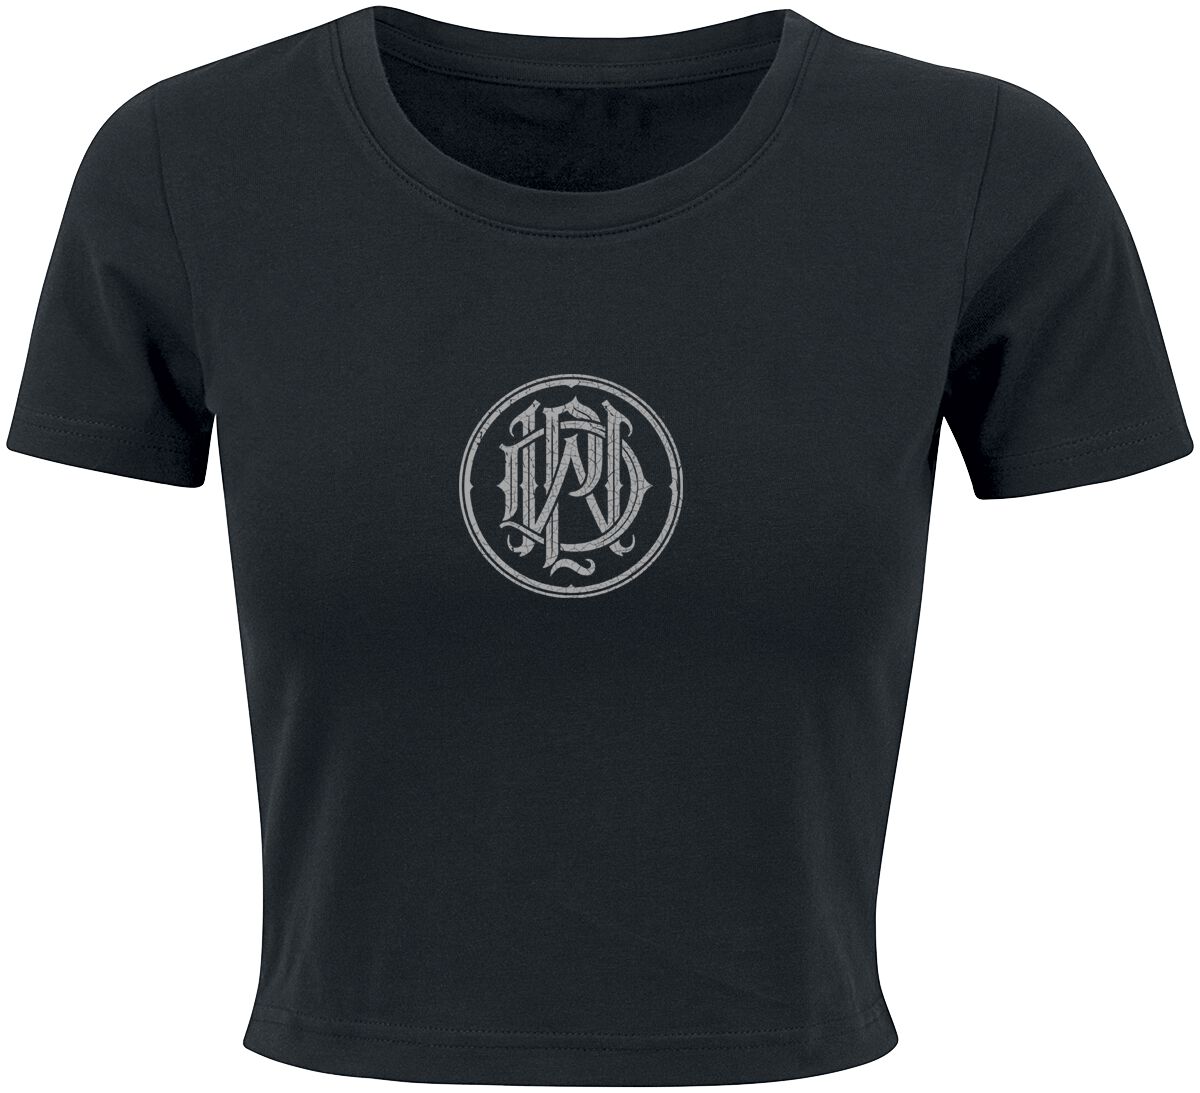 T-Shirt Manches courtes de Parkway Drive - Skull - S à XL - pour Femme - noir